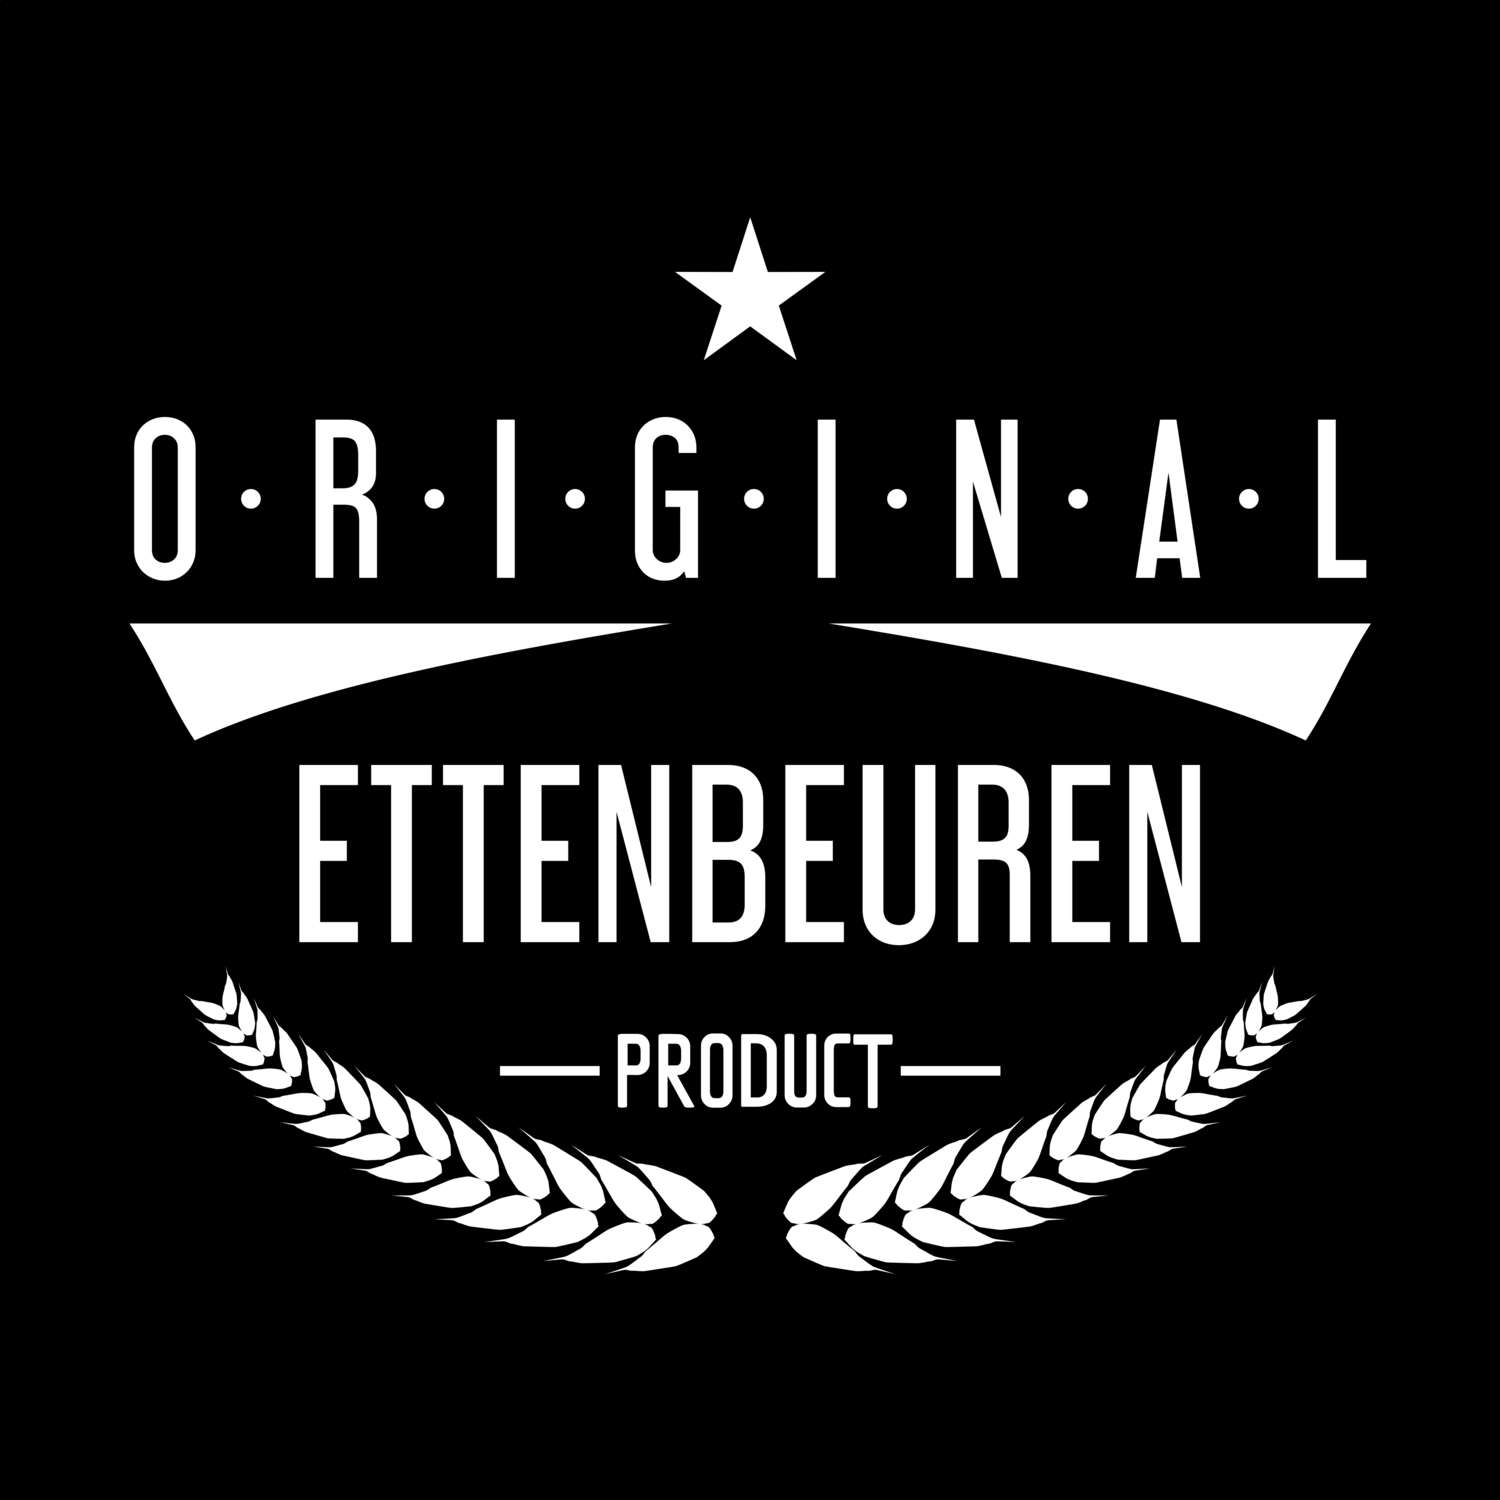 Ettenbeuren T-Shirt »Original Product«